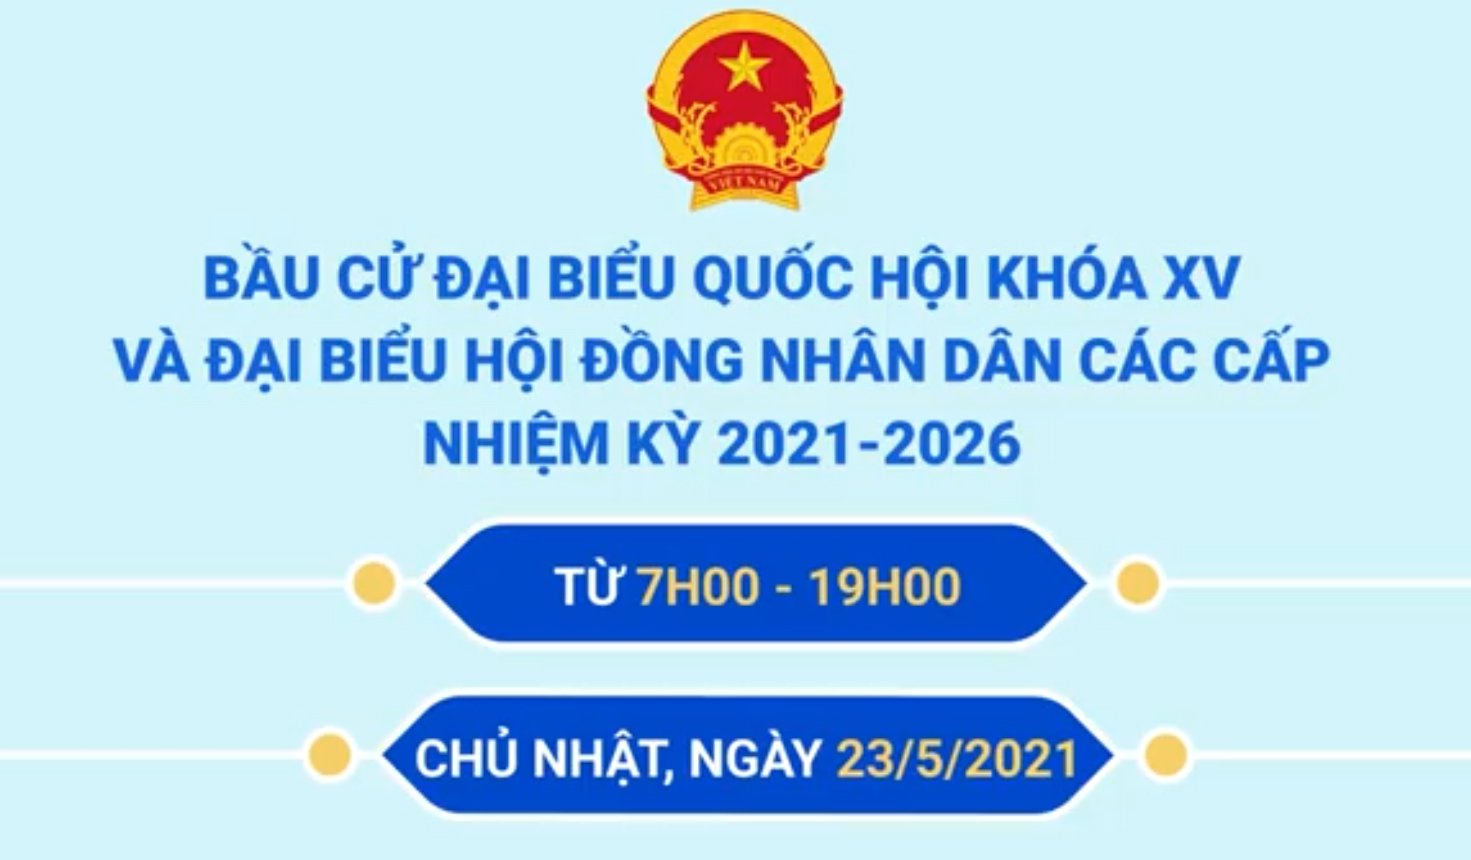 Quy trình 6Đ bầu Đại biểu Quốc hội khóa XV và đại biểu HĐND các cấp nhiệm kỳ 2021-2026